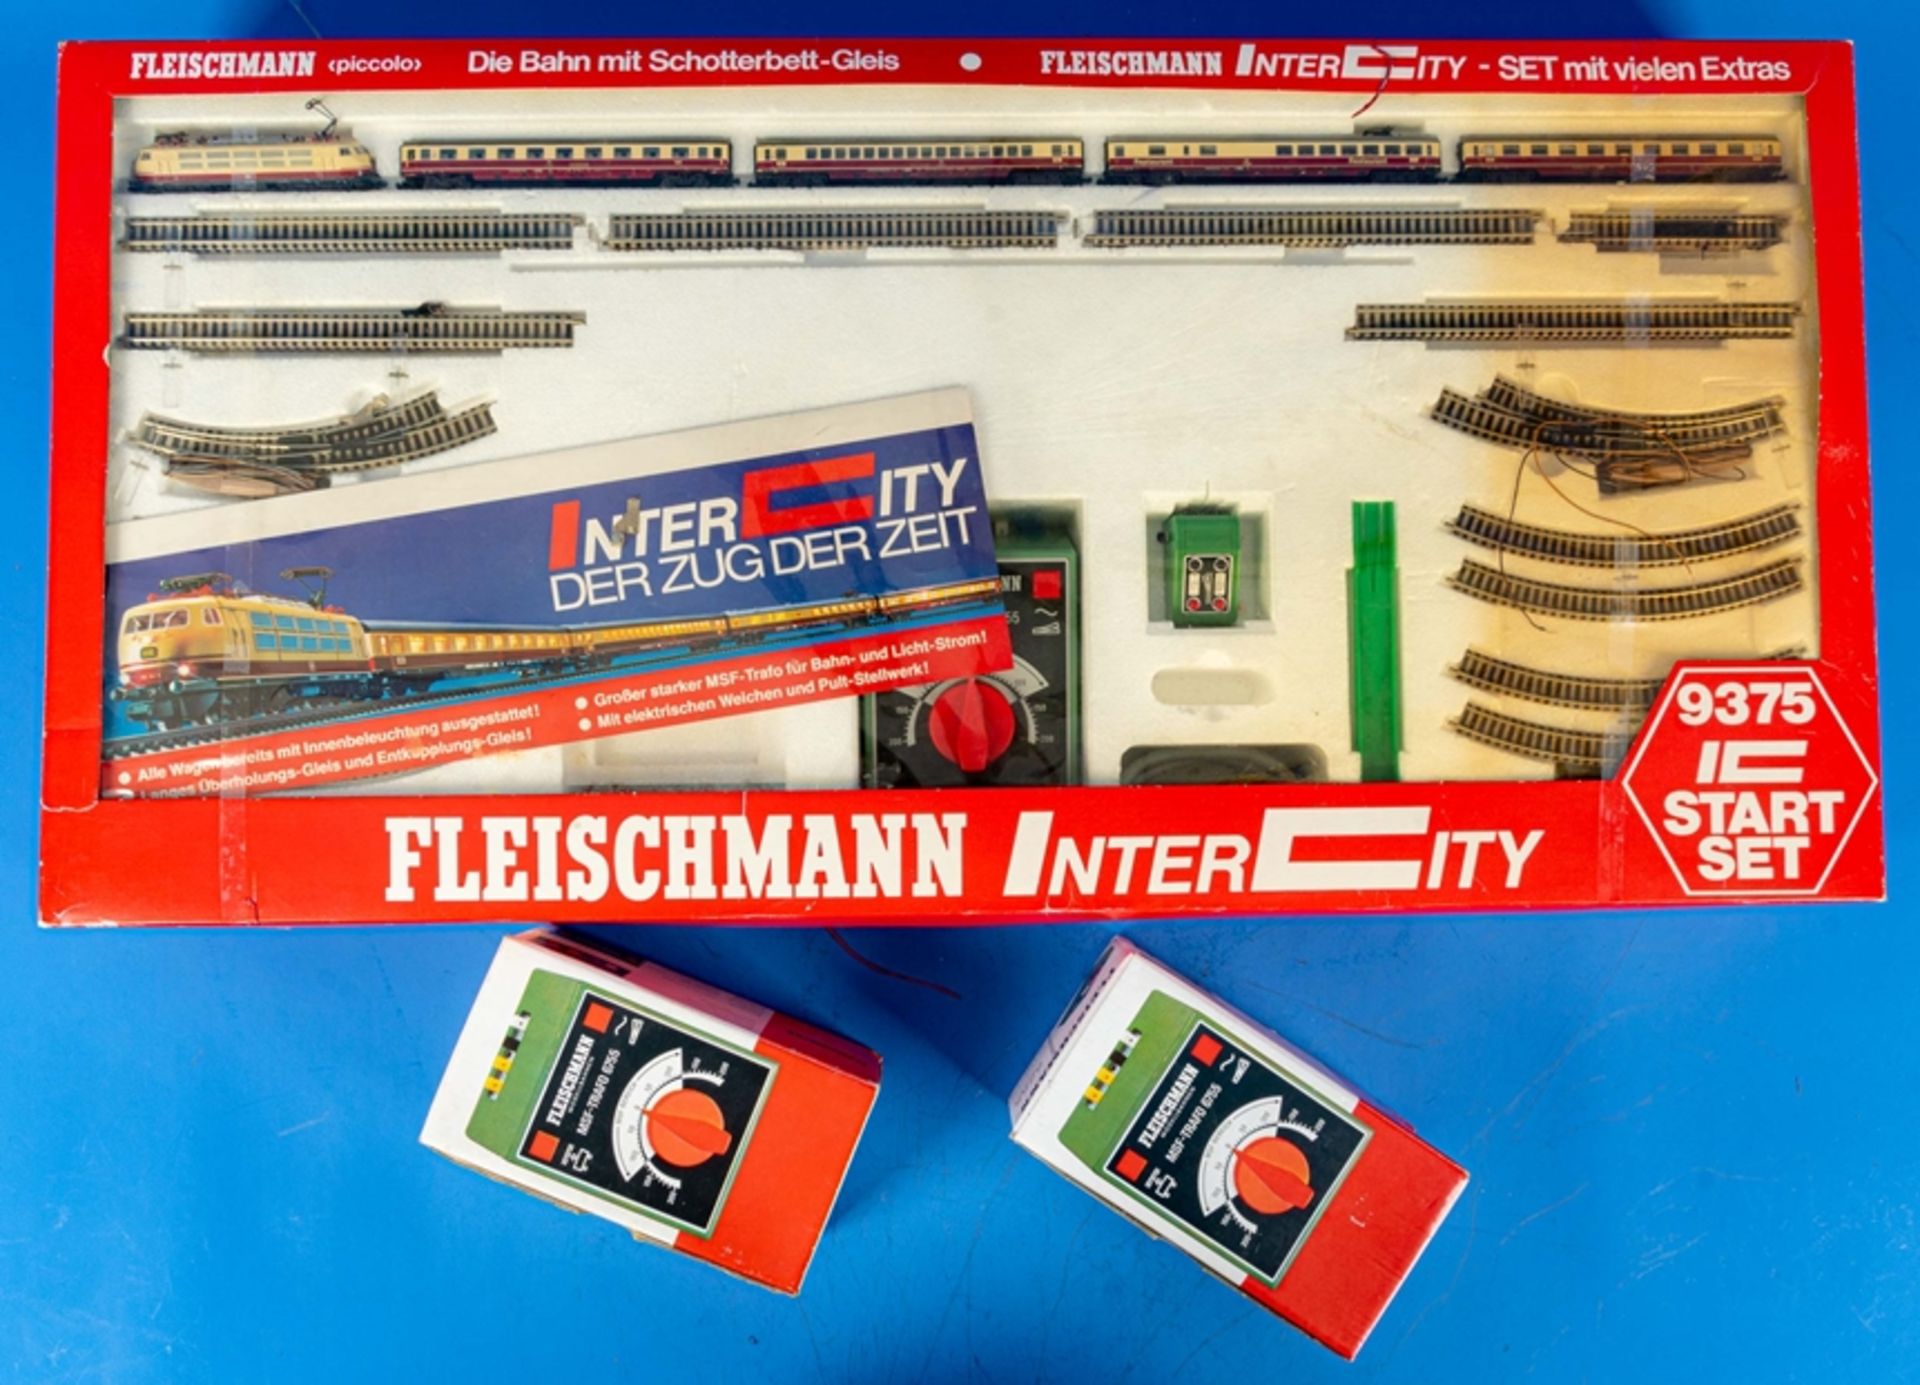 Fleischmann Intercity 9375 Starter-Set in orig. Kartonage sowie 2 x MSF-Trafo 6675, ebenfalls ins o - Bild 2 aus 2